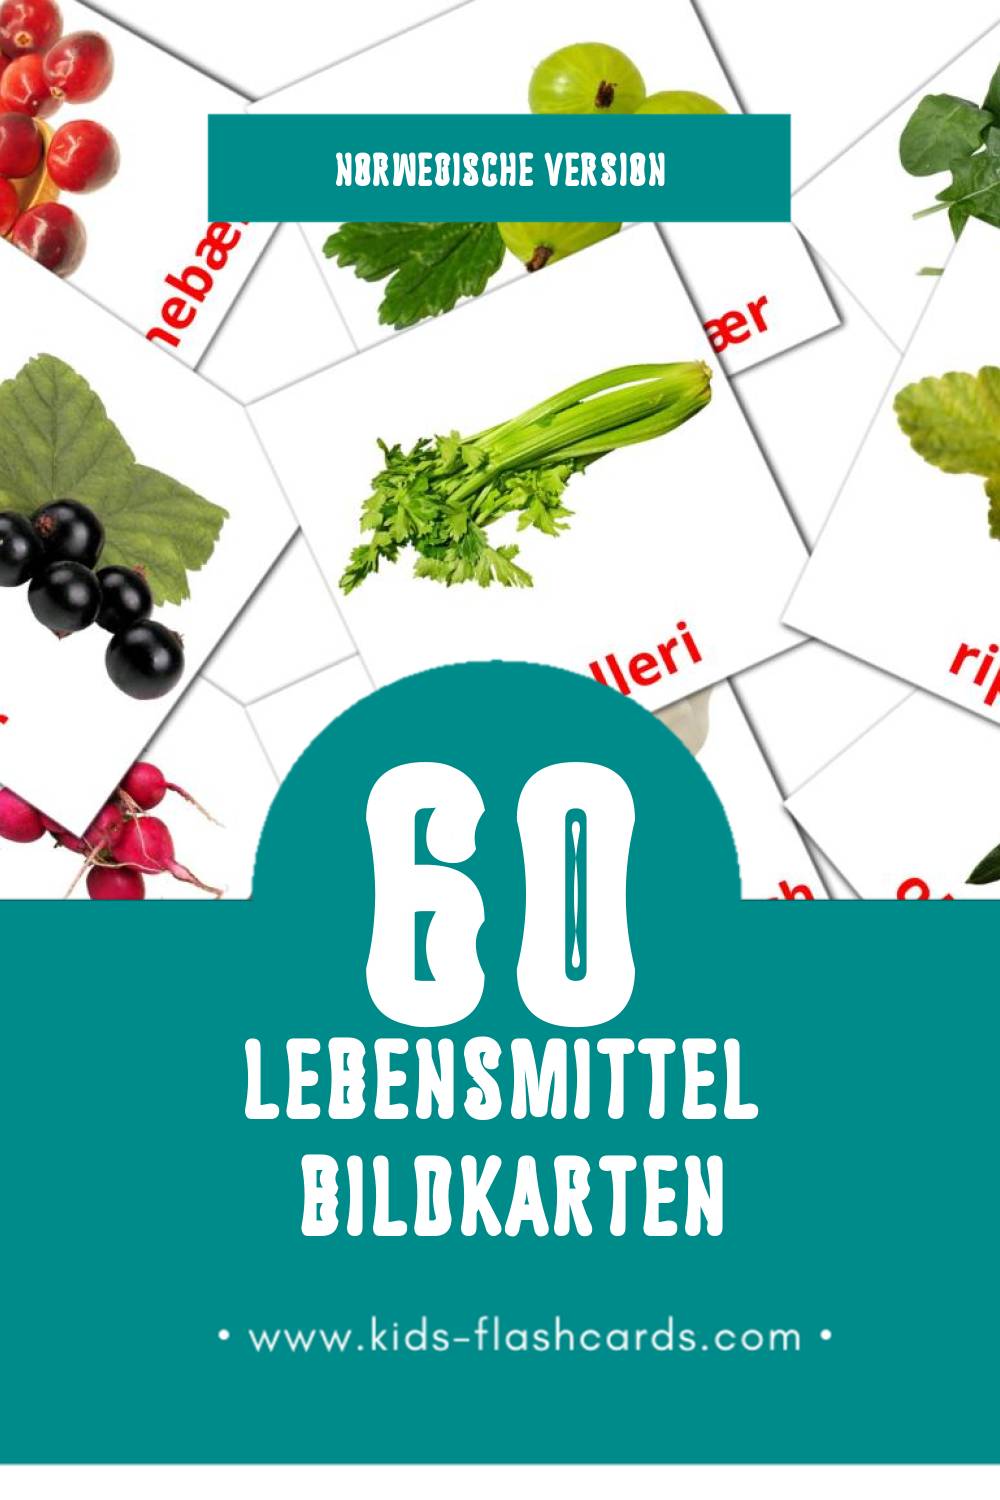 Visual Mat Flashcards für Kleinkinder (60 Karten in Norwegisch)